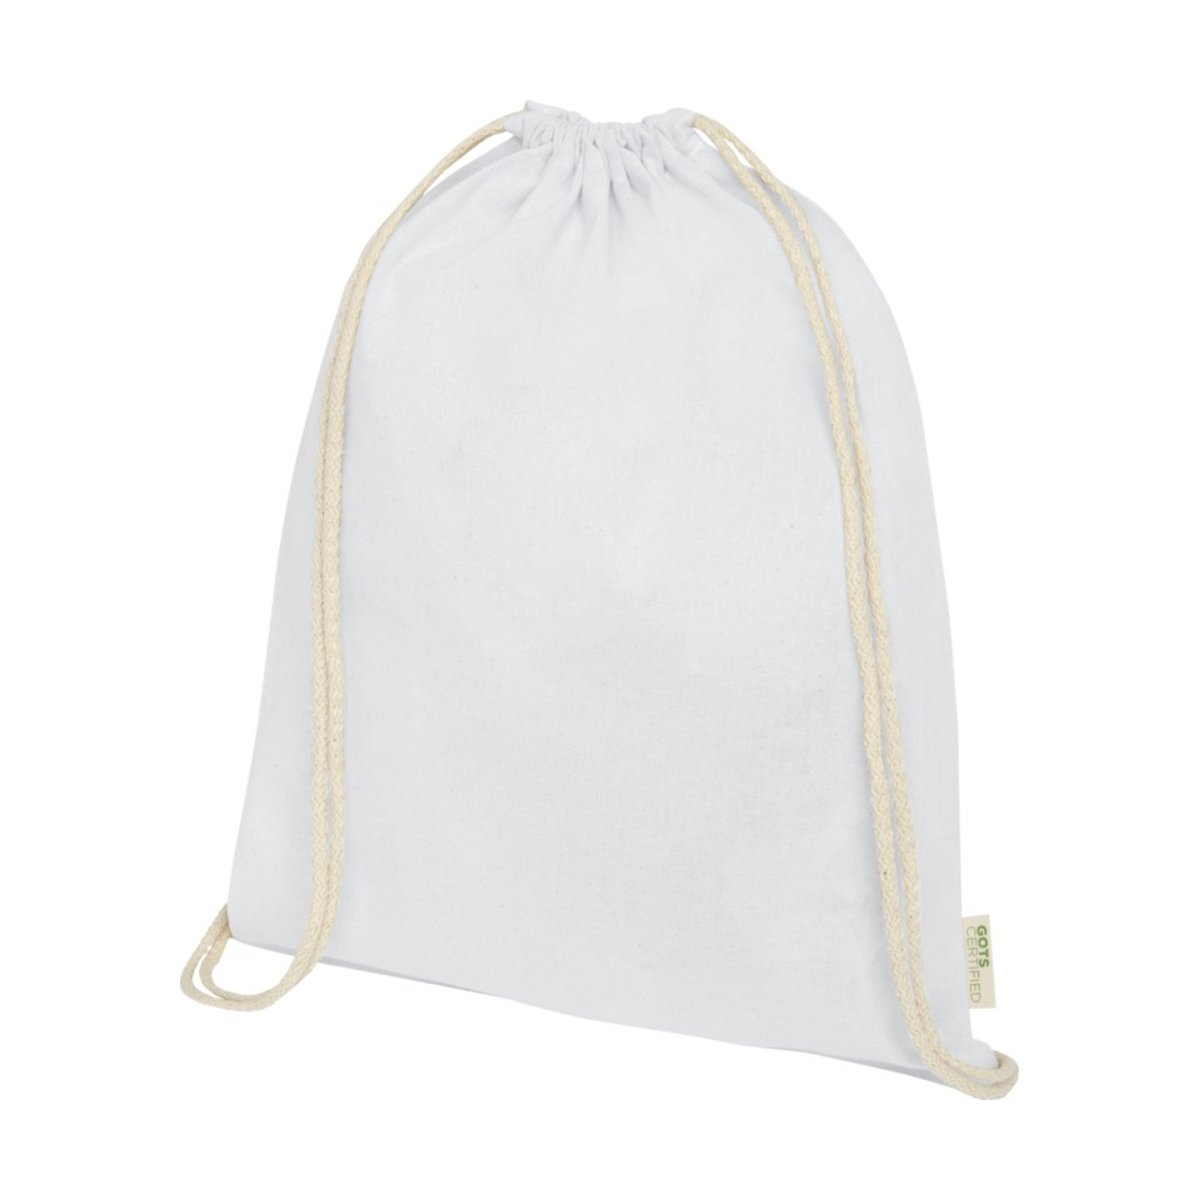 Orissa  plecak ściągany sznurkiem z bawełny organicznej z certyfikatem GOTS o gramaturze 100 g/m²